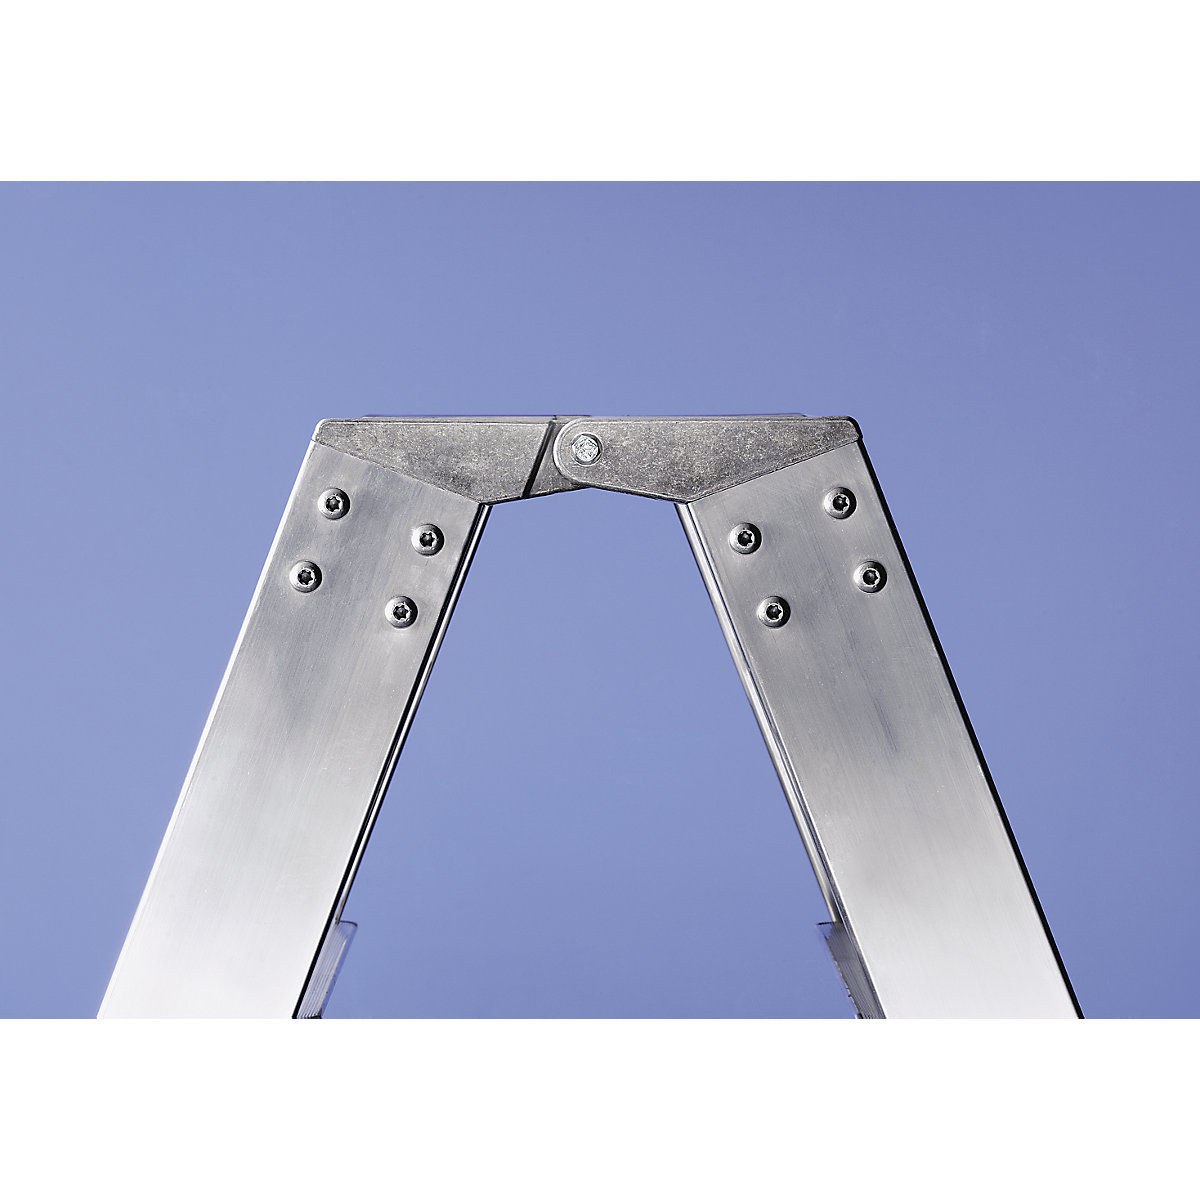 Escalera tipo tijera de peldaños planos, ascenso por ambos lados – MUNK (Imagen del producto 22)-21